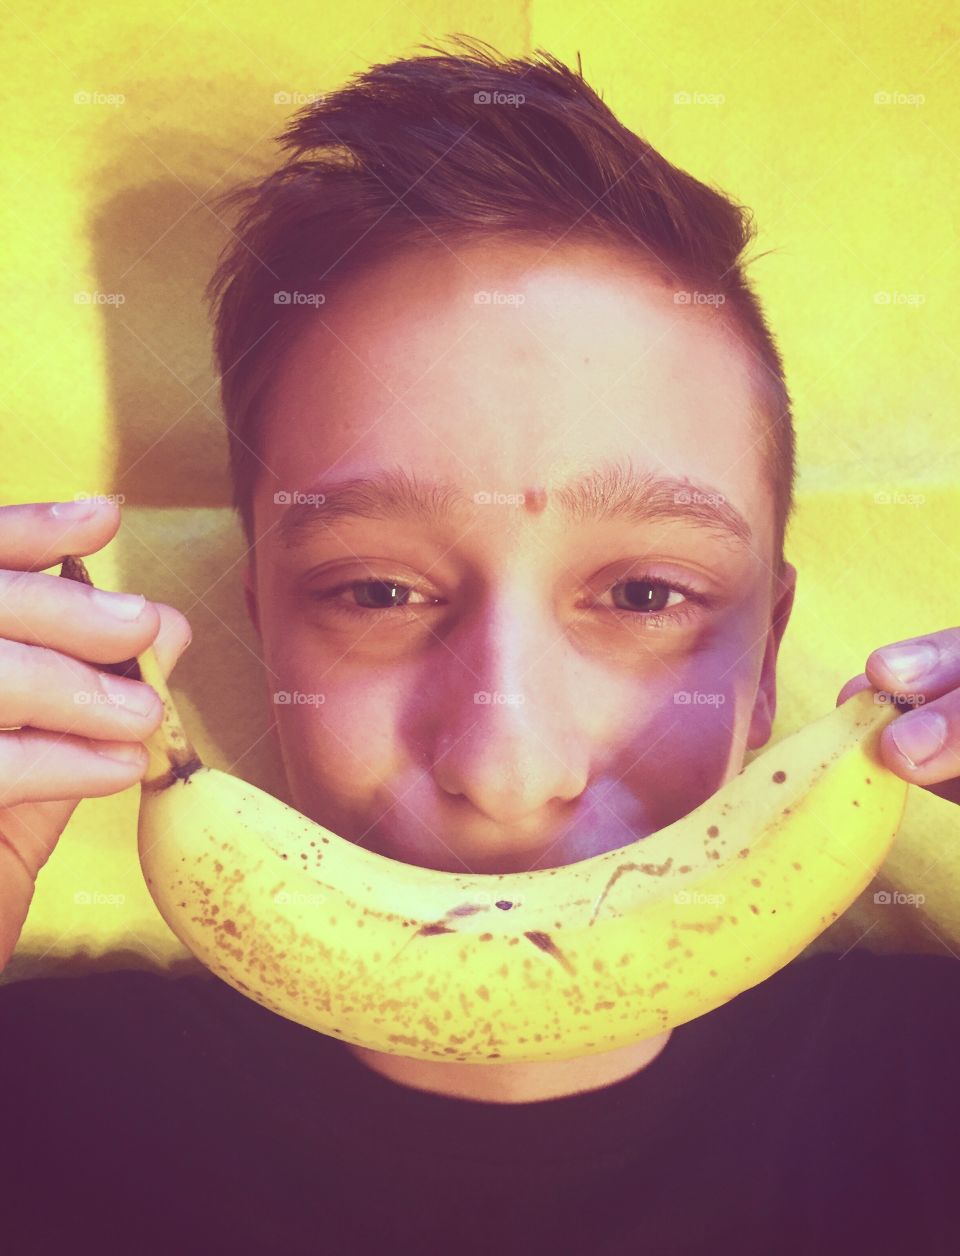 Banana smile 😊